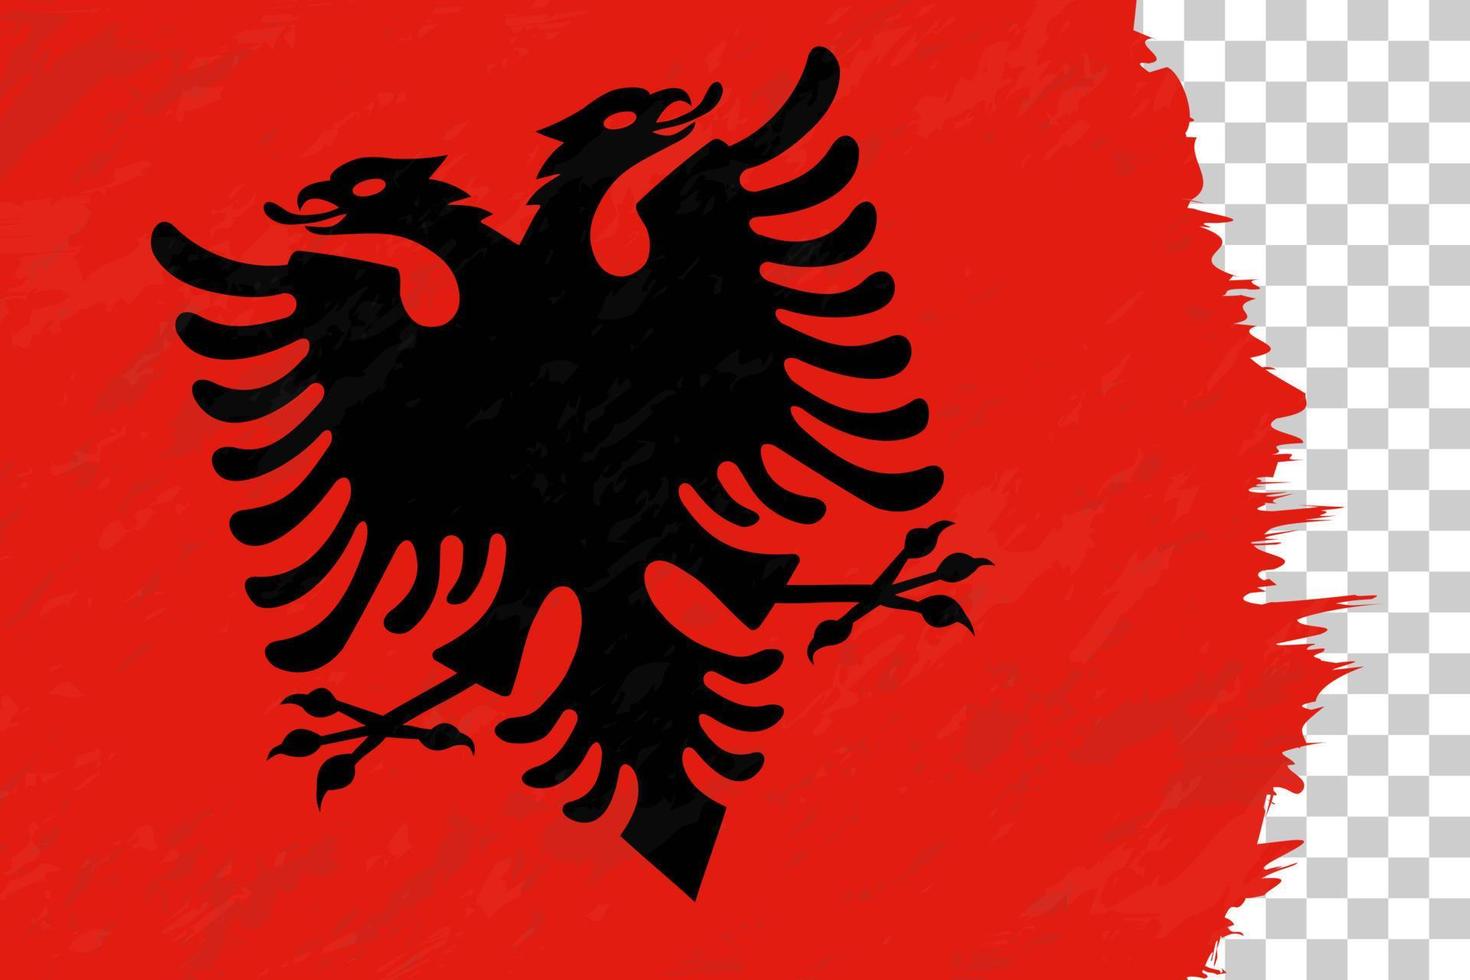 orizzontale astratto grunge spazzolato bandiera dell'albania sulla griglia trasparente. vettore